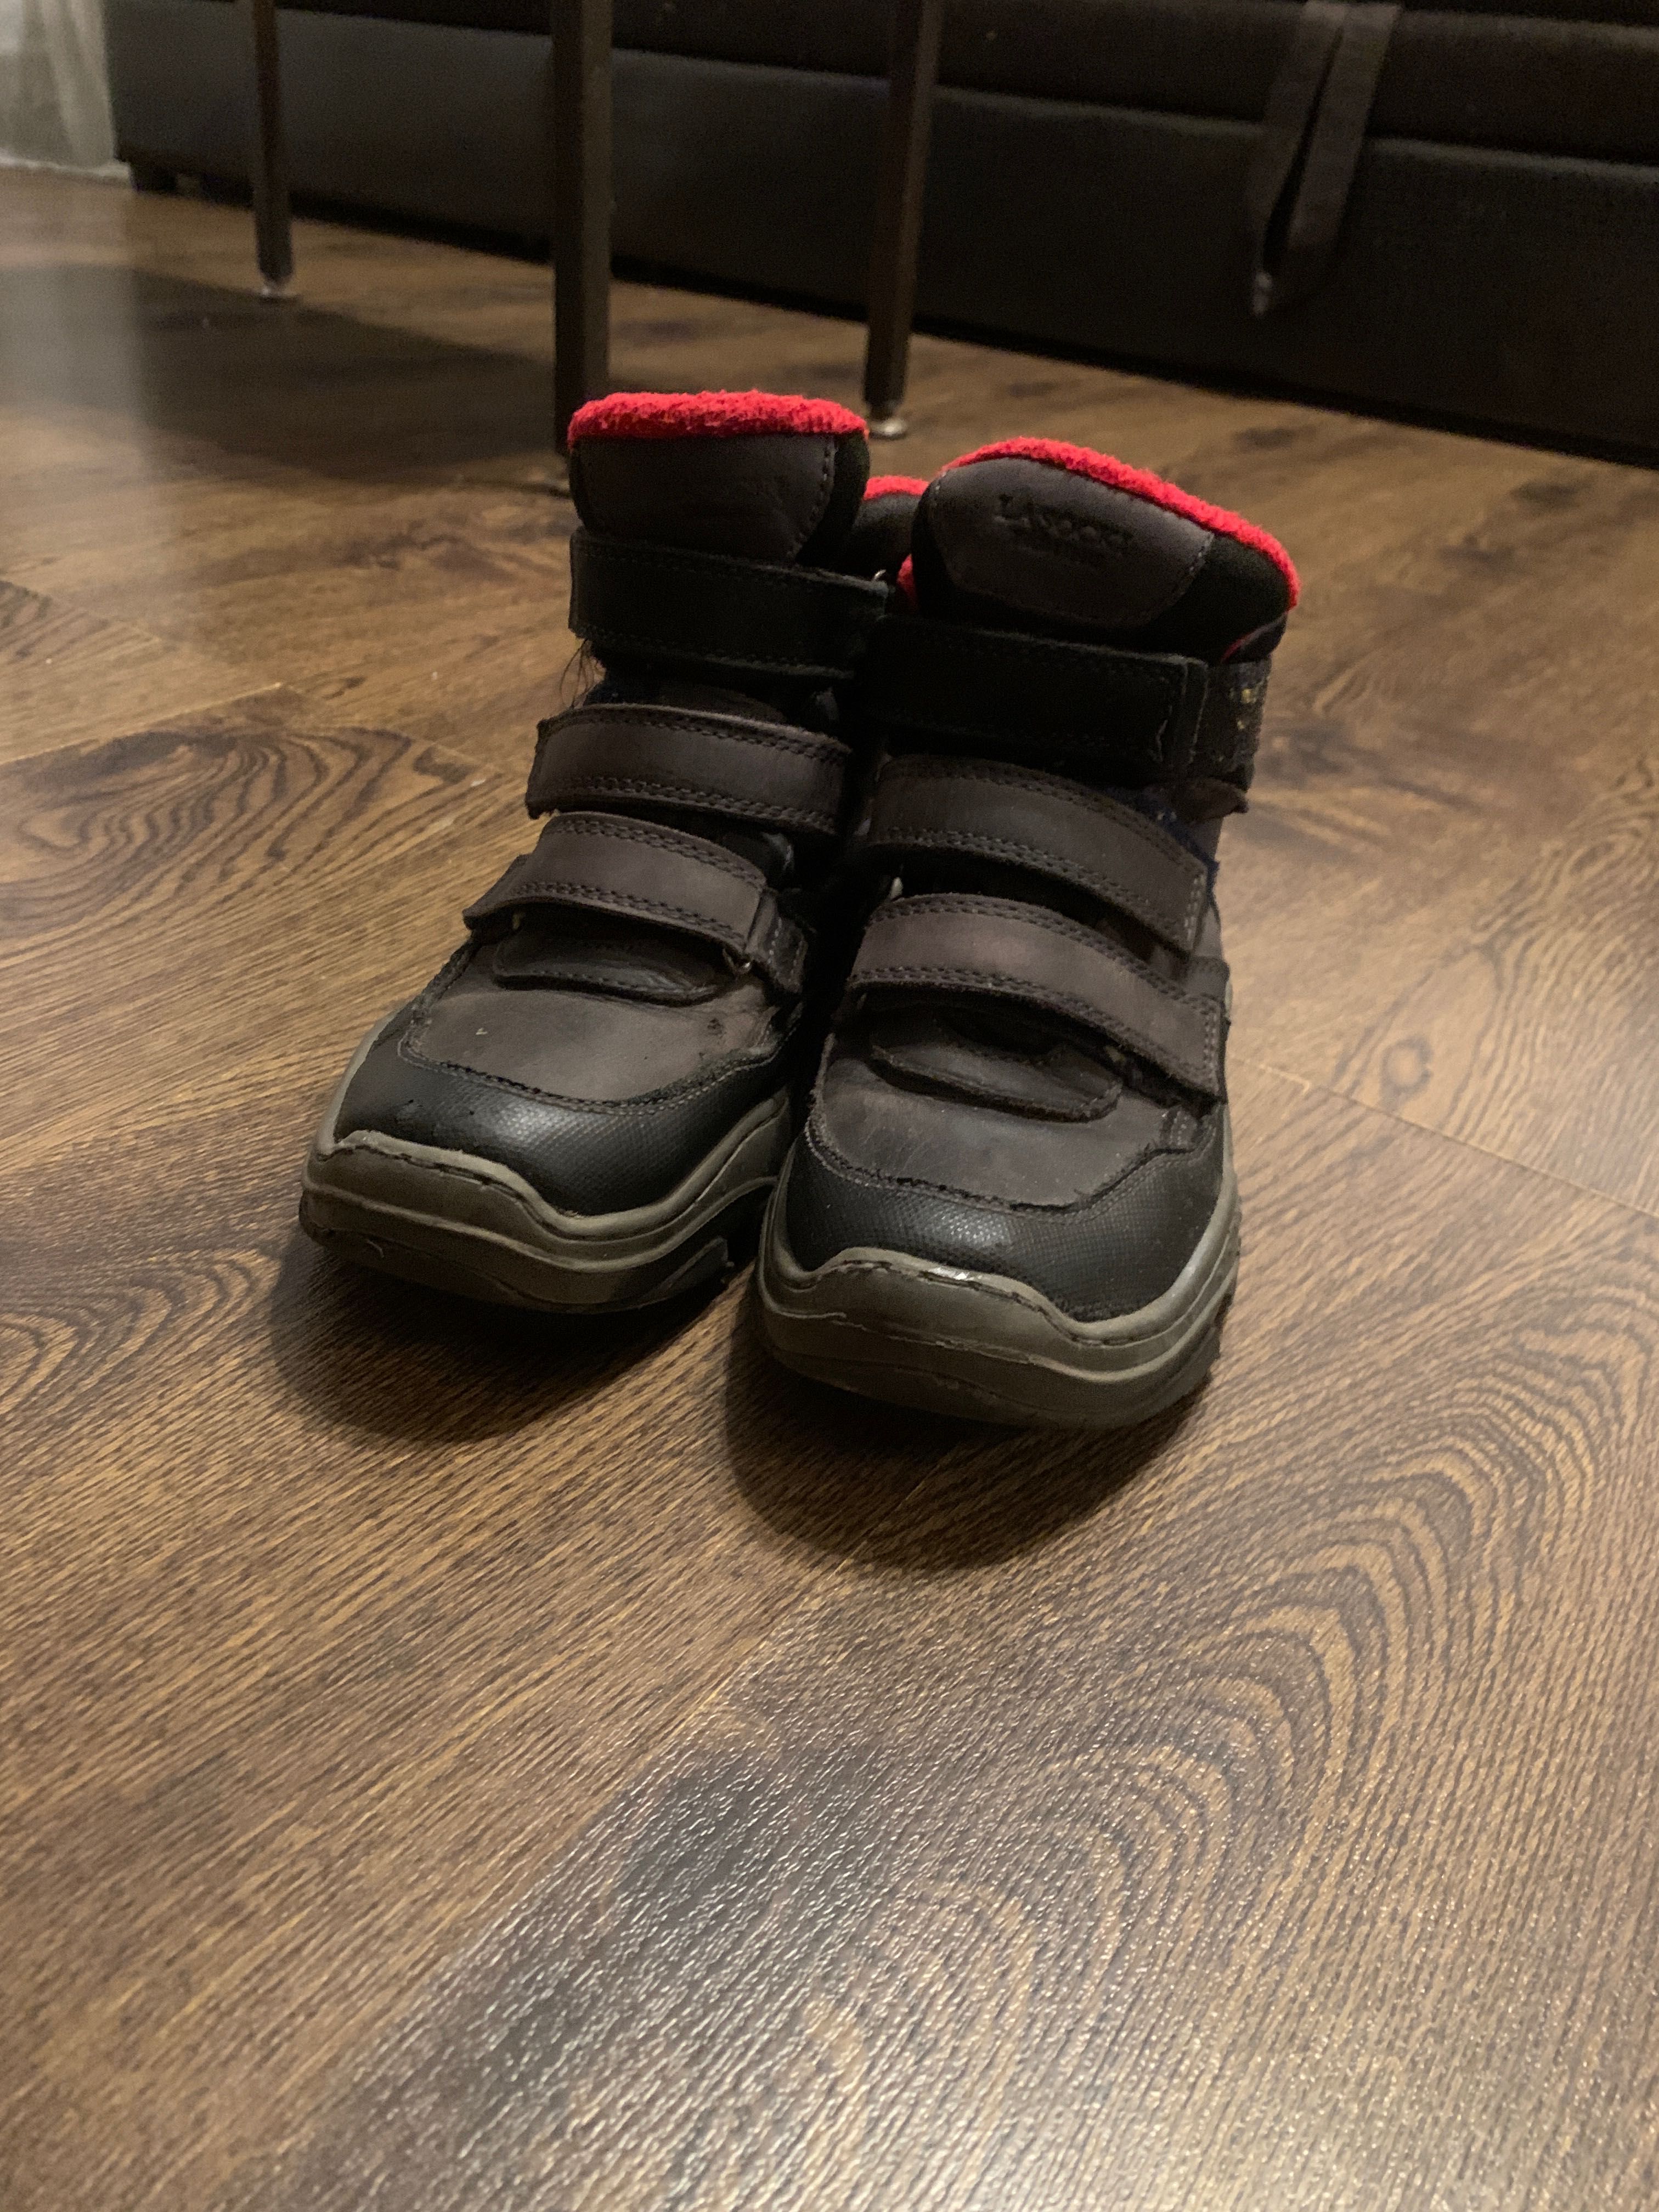 Сапоги, ботинки весенние на мальчика, 33 размер